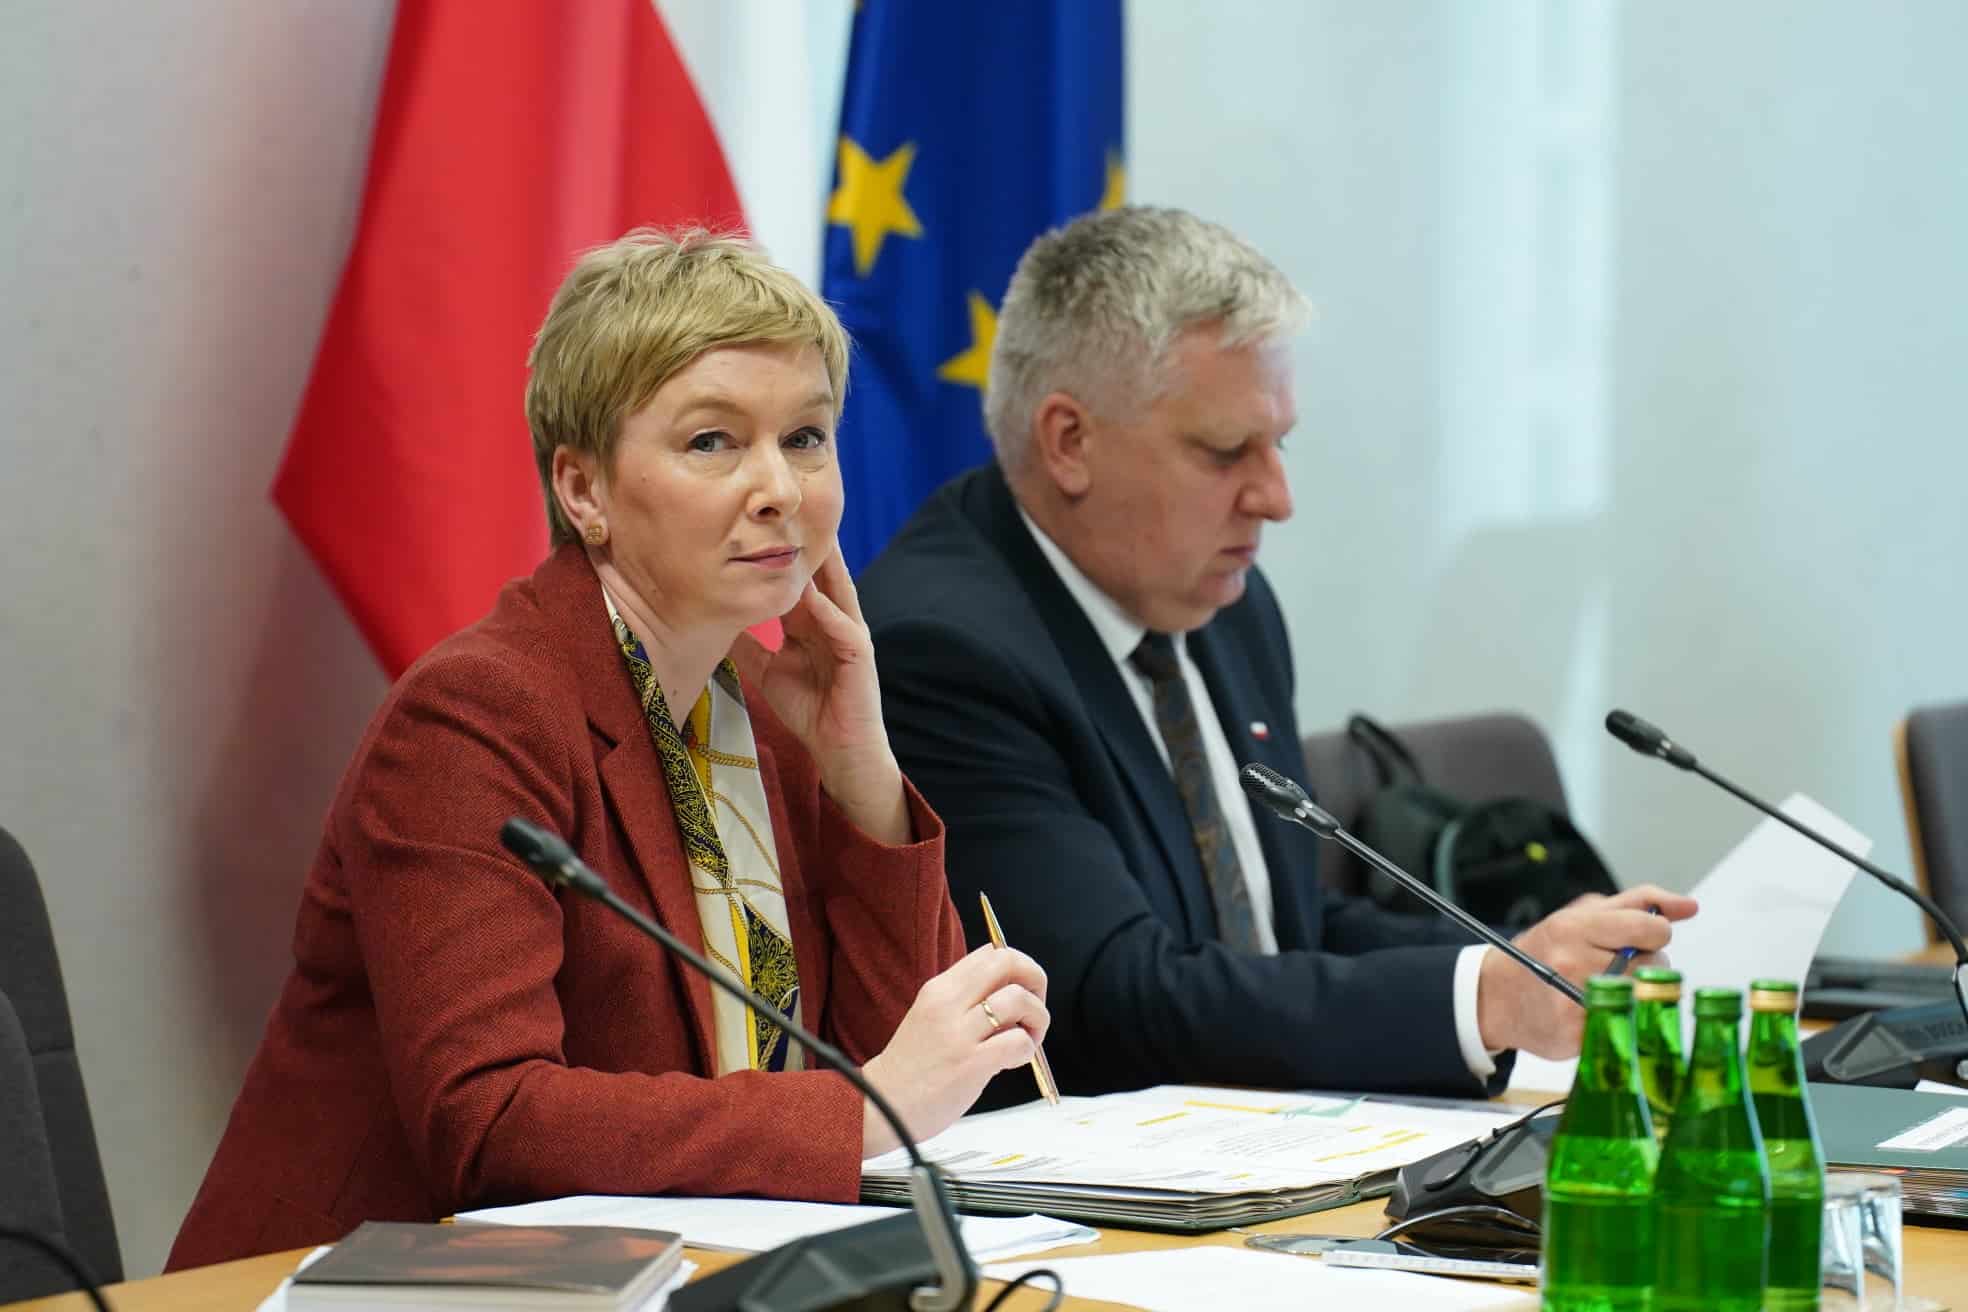 Sejmowa komisja zarekomendowała przyjęcie projektu ustawy o Akademii Kopernikańskiej Wiadomości, Olsztyn